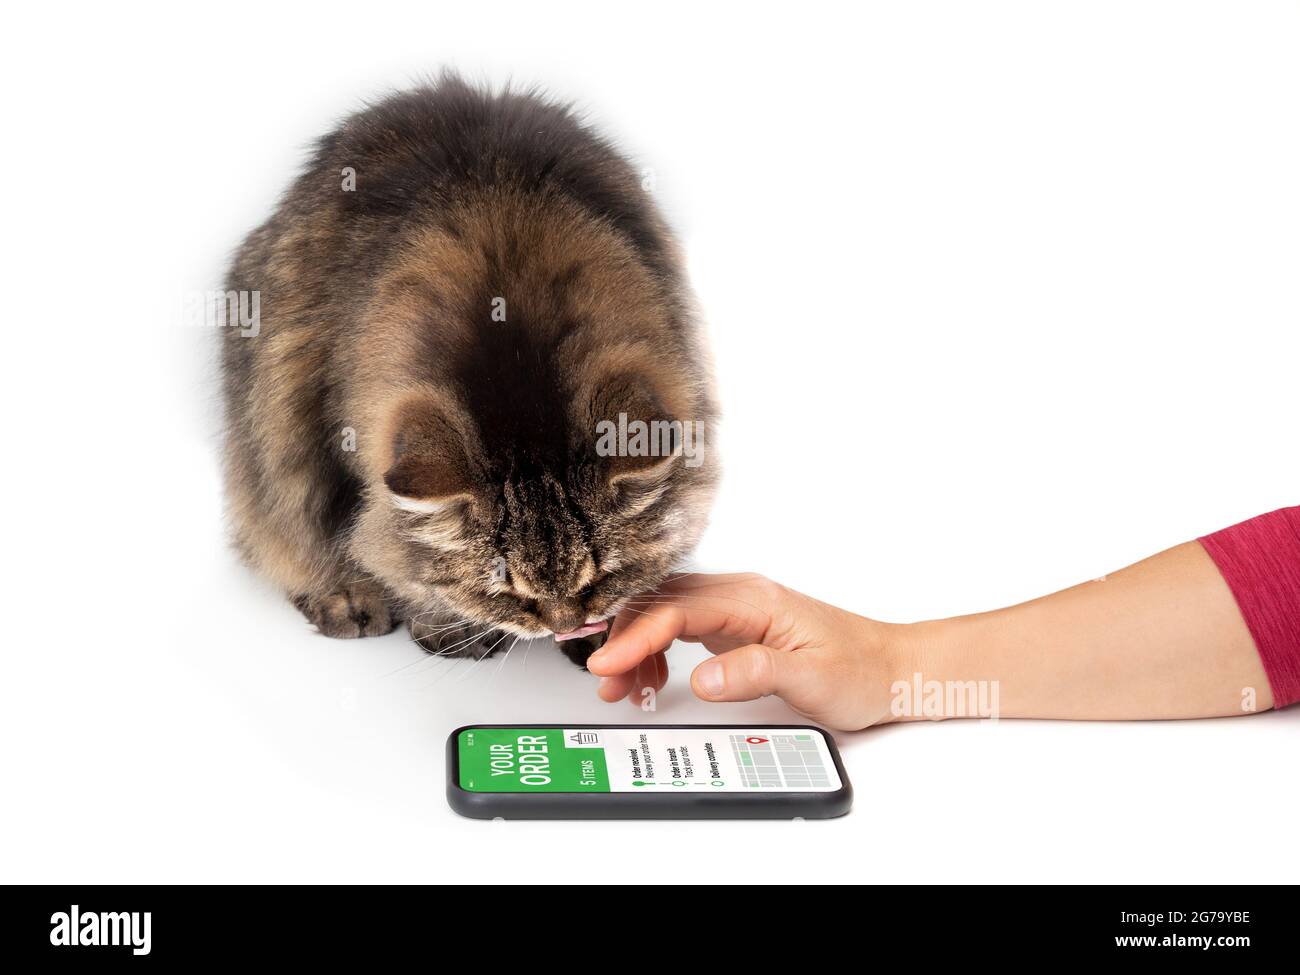 Katze und Frau, die sich die mobile Zustellungs-App anschaut. Weibliche Hand mit Smartphone und einer Katze, die auf den Bestellbildschirm schaut, während sie den Mund leckt. Stockfoto